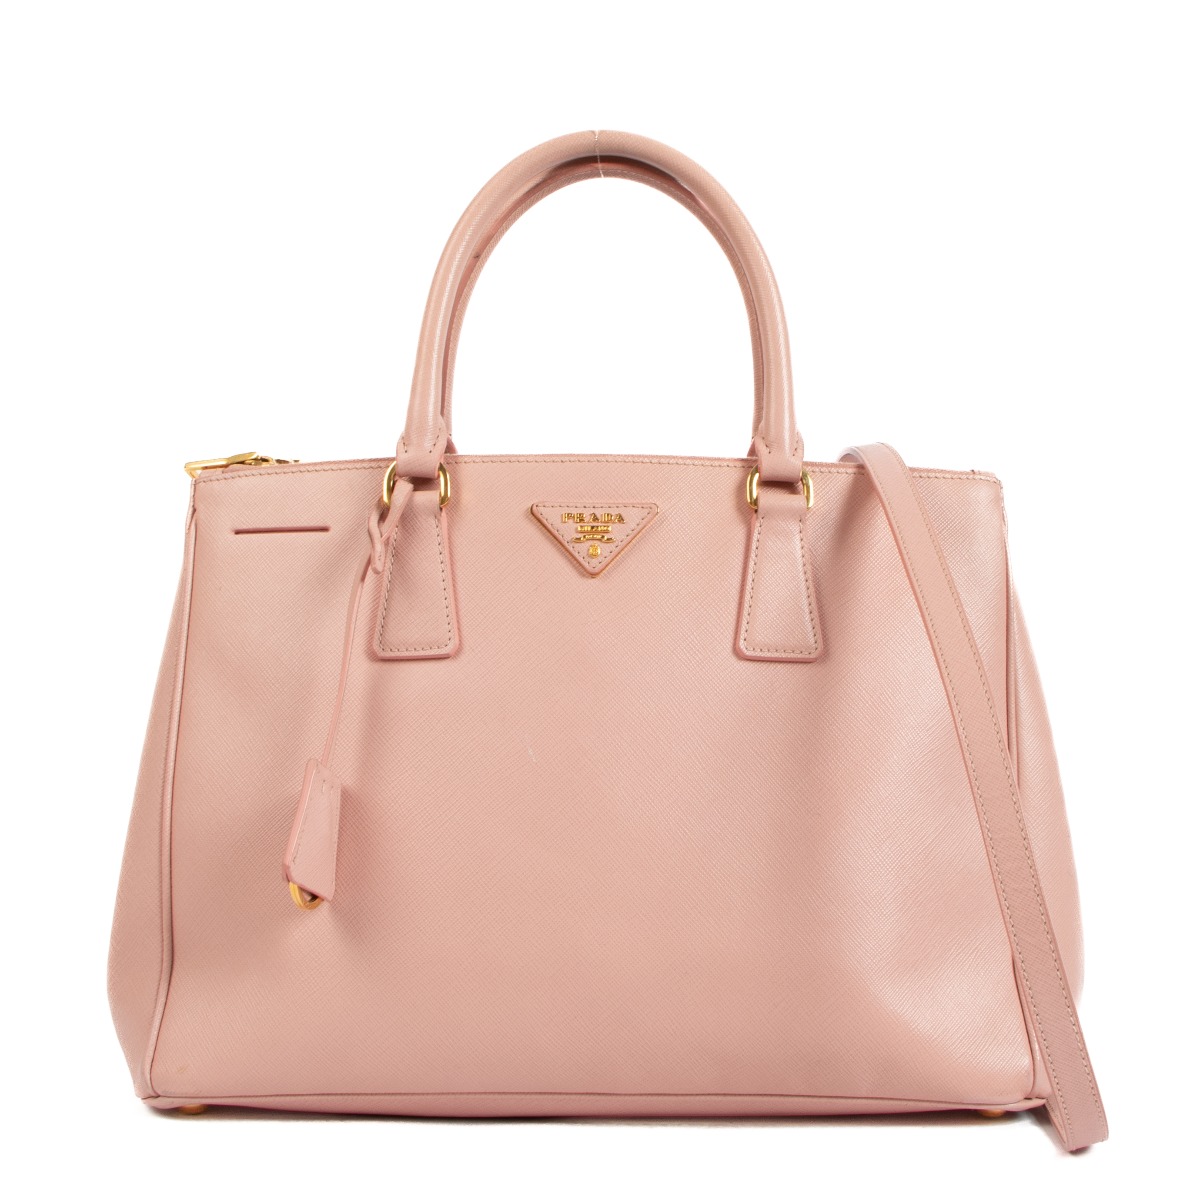 Prada Authenticated Saffiano Leather Handbag